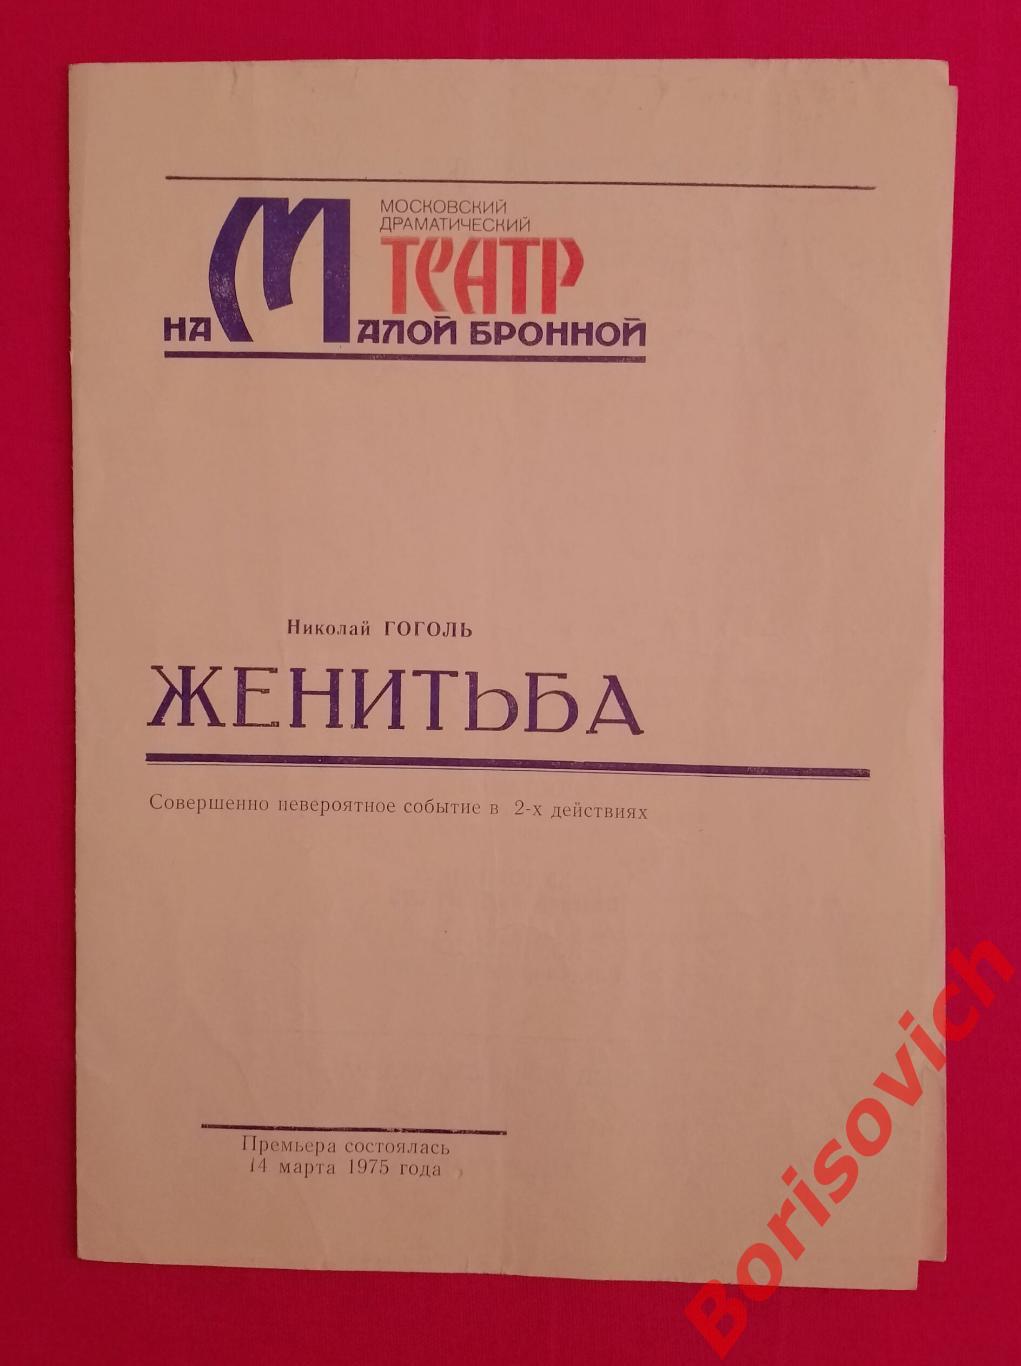 Программка Театр на Малой Бронной Н. Гоголь ЖЕНИТЬБА 14-03-1975